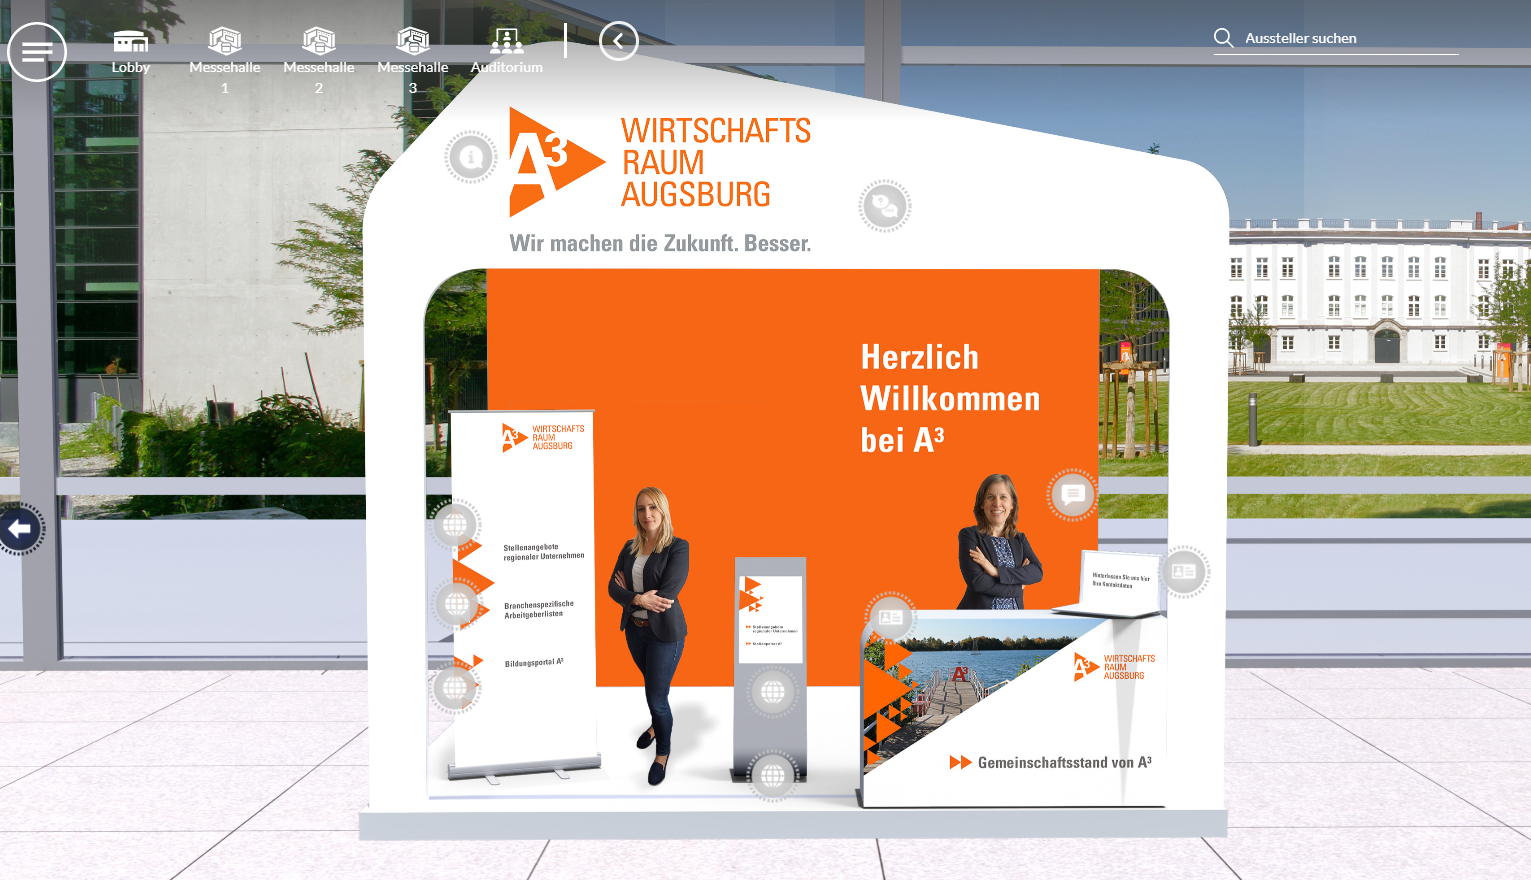 Virtueller Messestand Regio Augsburg Wirtschaft GmbH (v.l.: Stefanie Pöschel, Veronika Wobser)